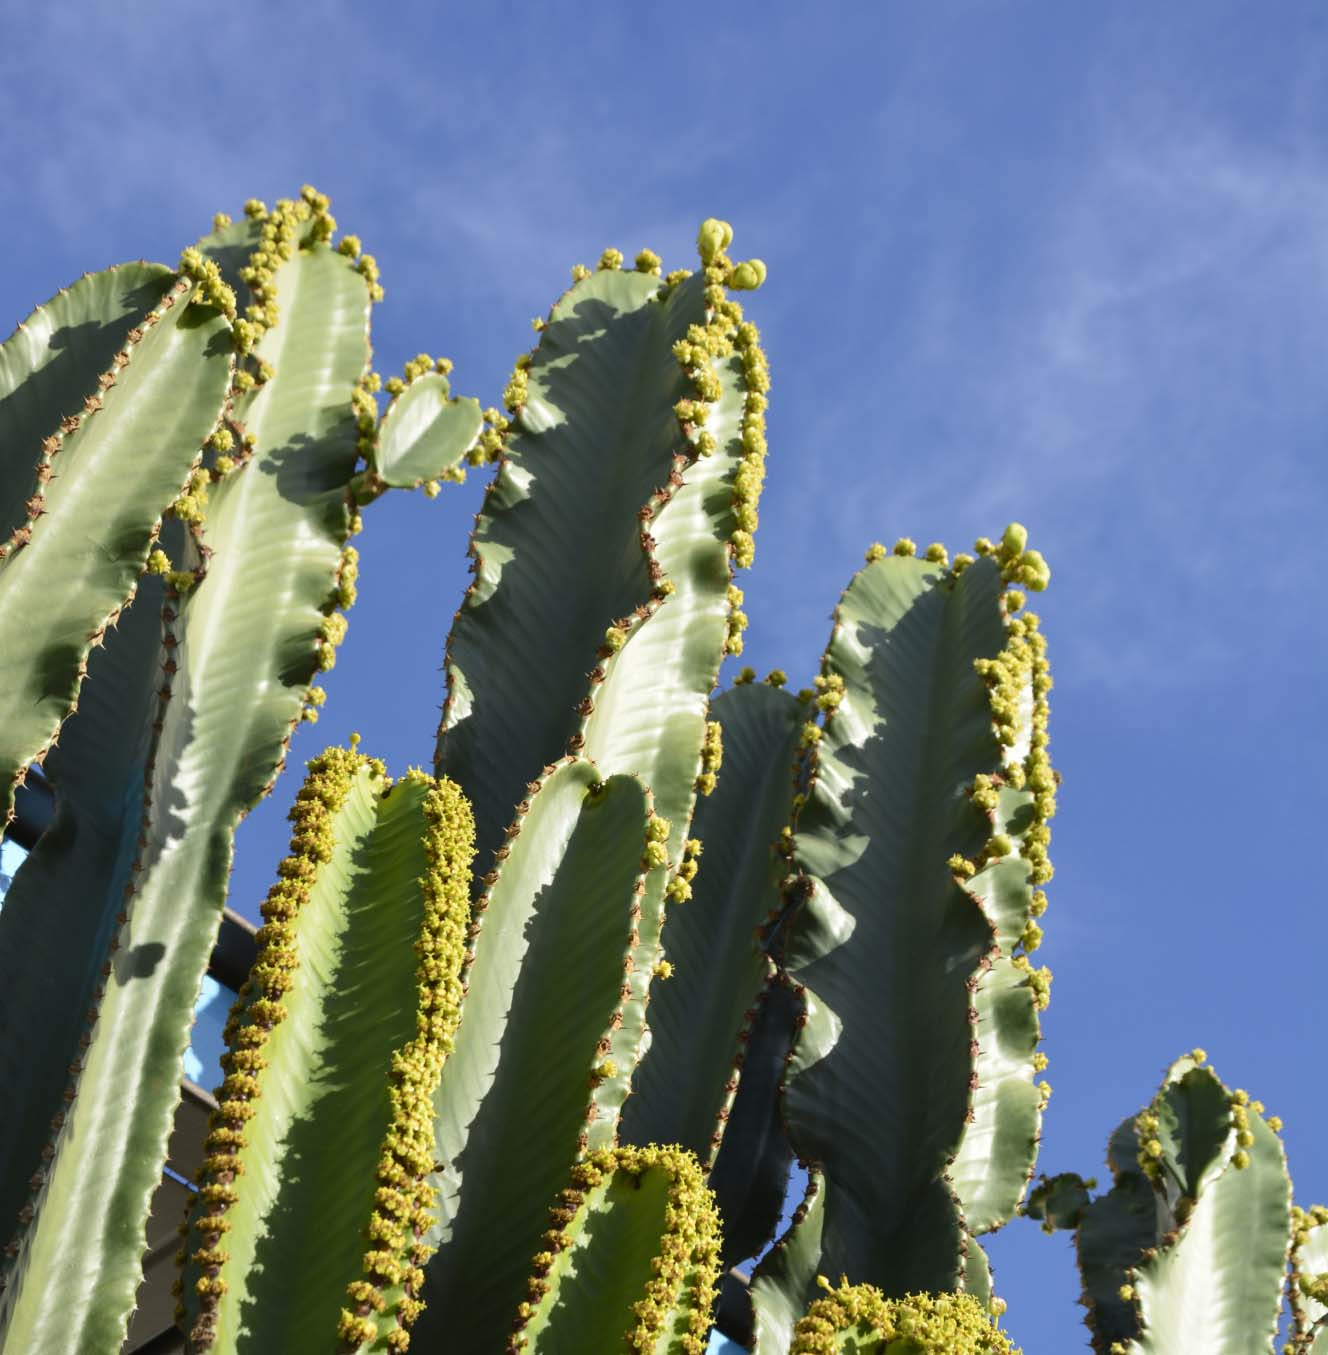 cactus in the desert as seen through cactus photography